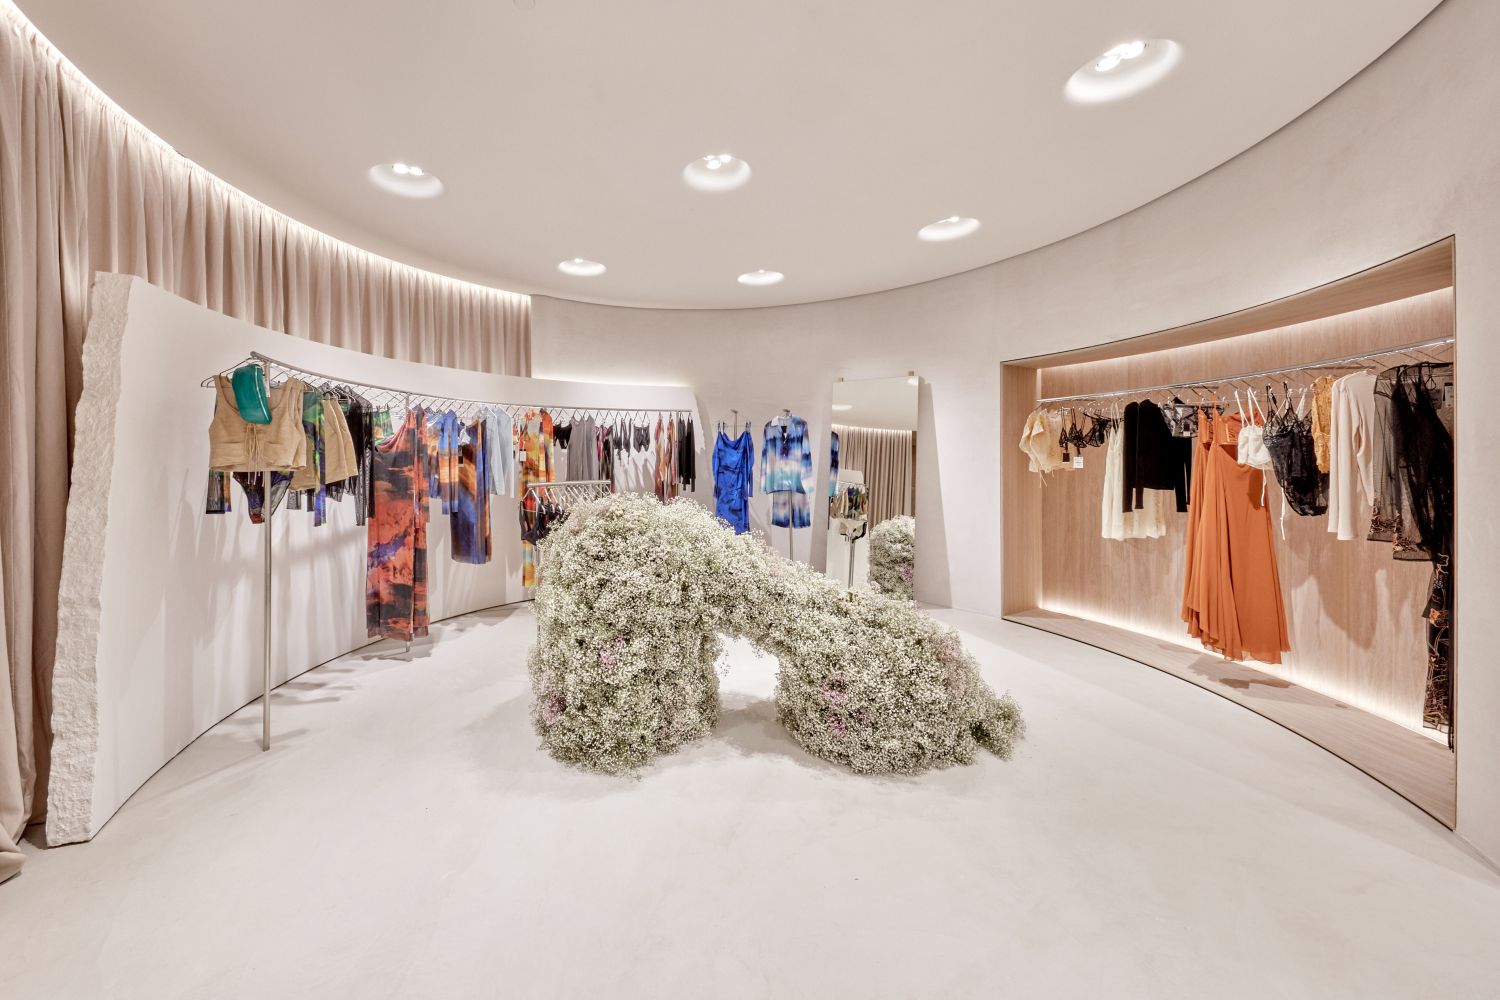 Primeira Zara em Portugal reabre com novo conceito: lojas amplas e